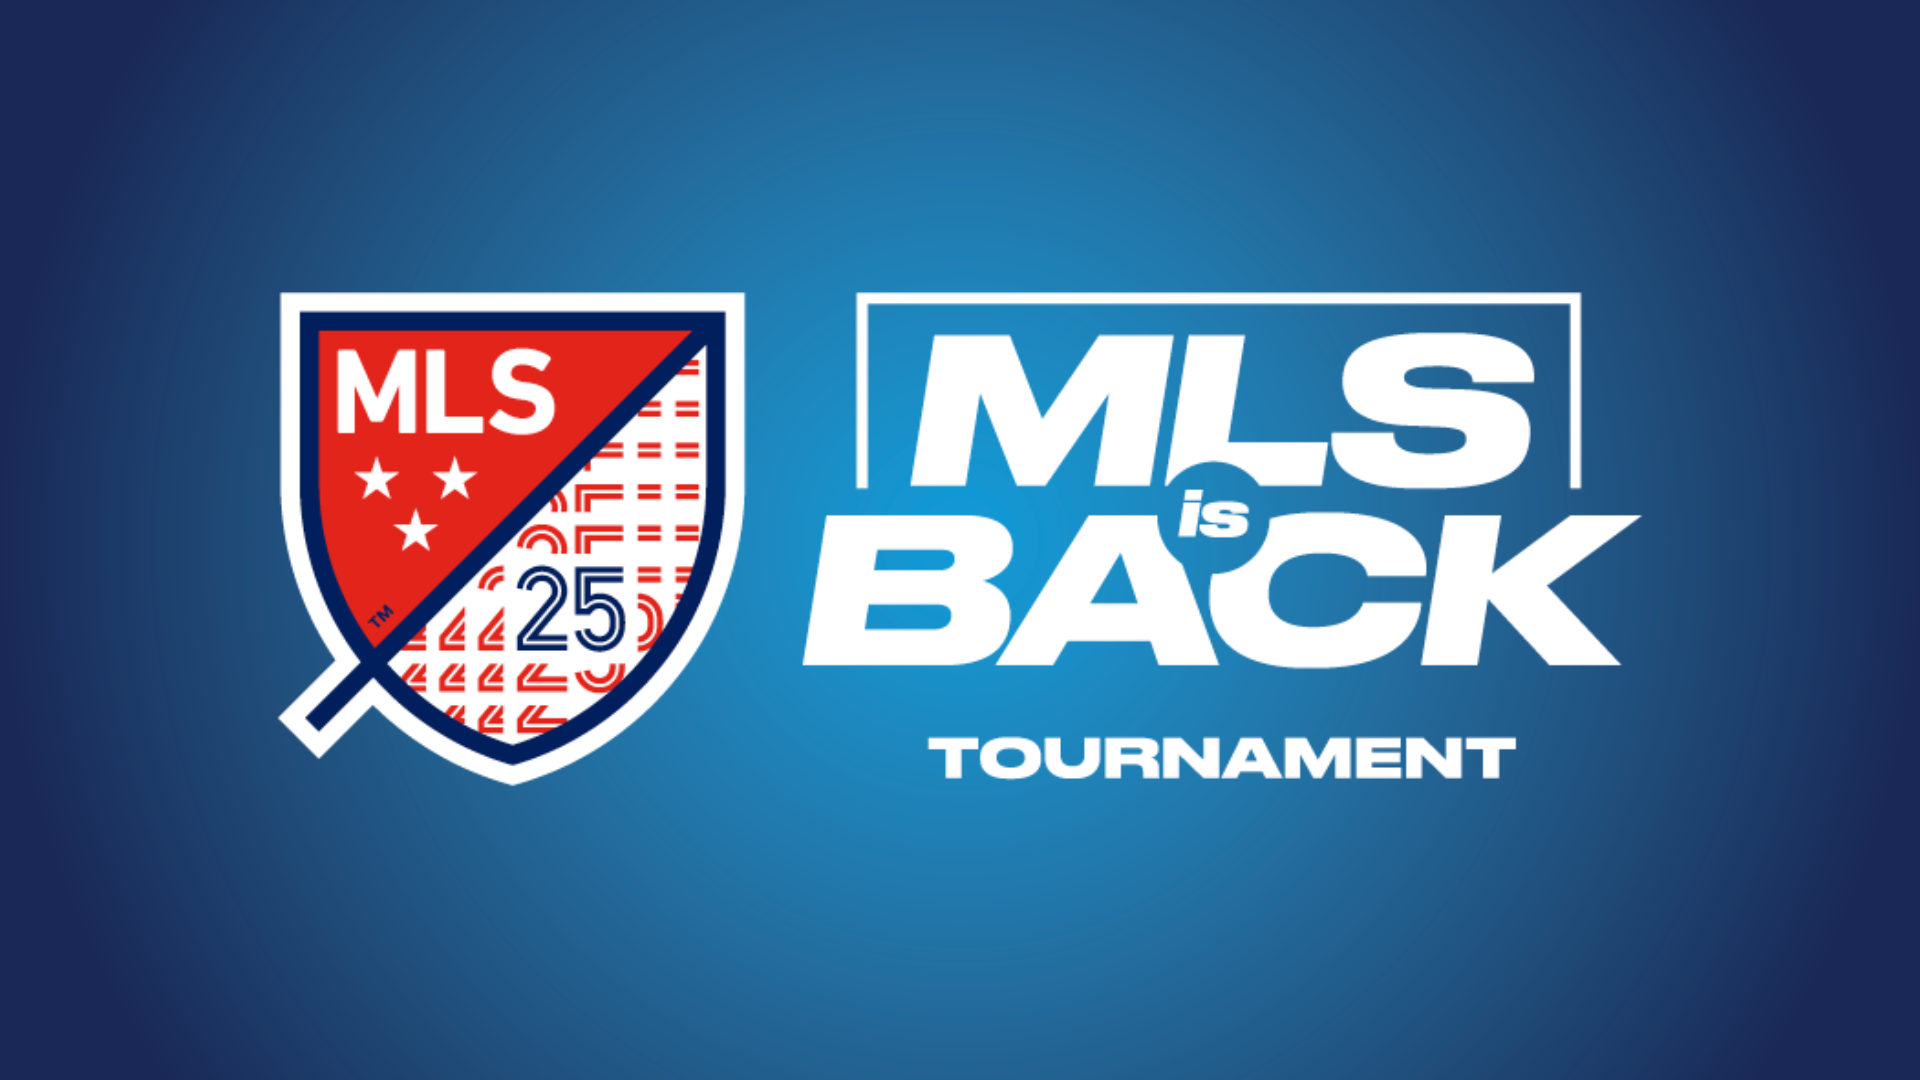 MLS is Back Tournament releases fixtures